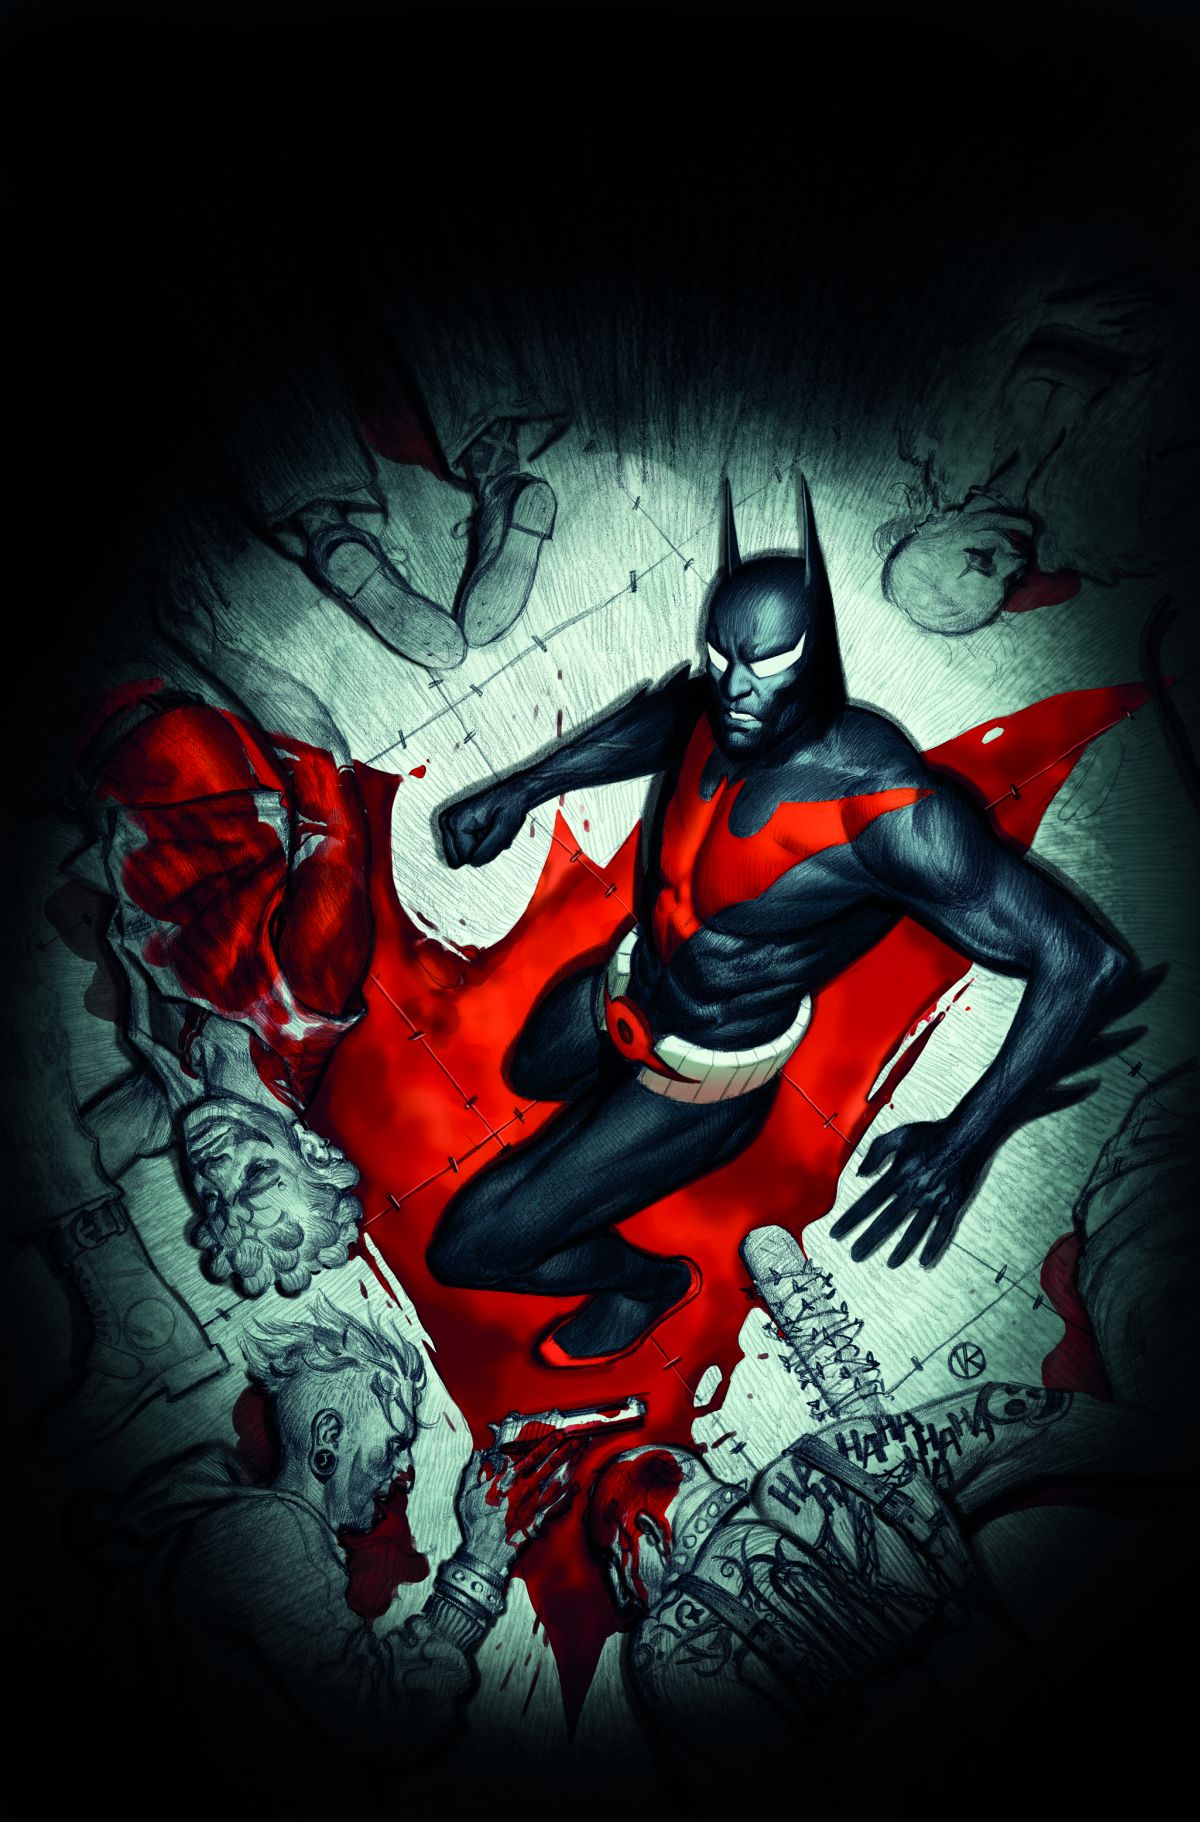 BATMAN BEYOND #20